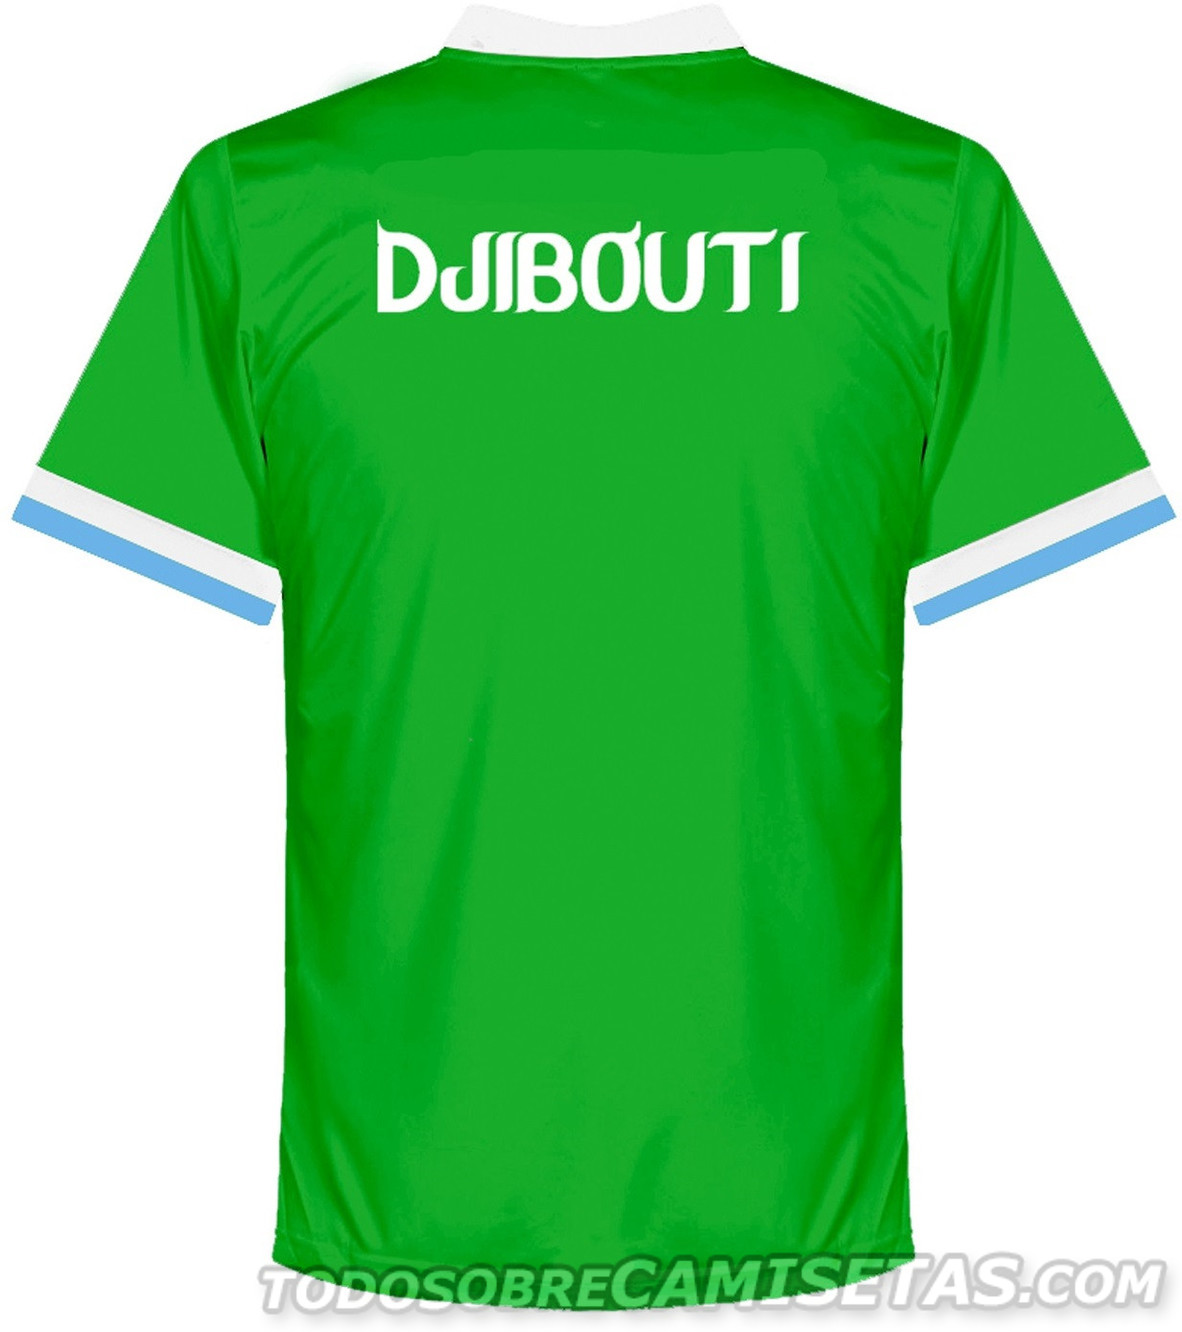 Djibouti AMS 2016-17 Kits